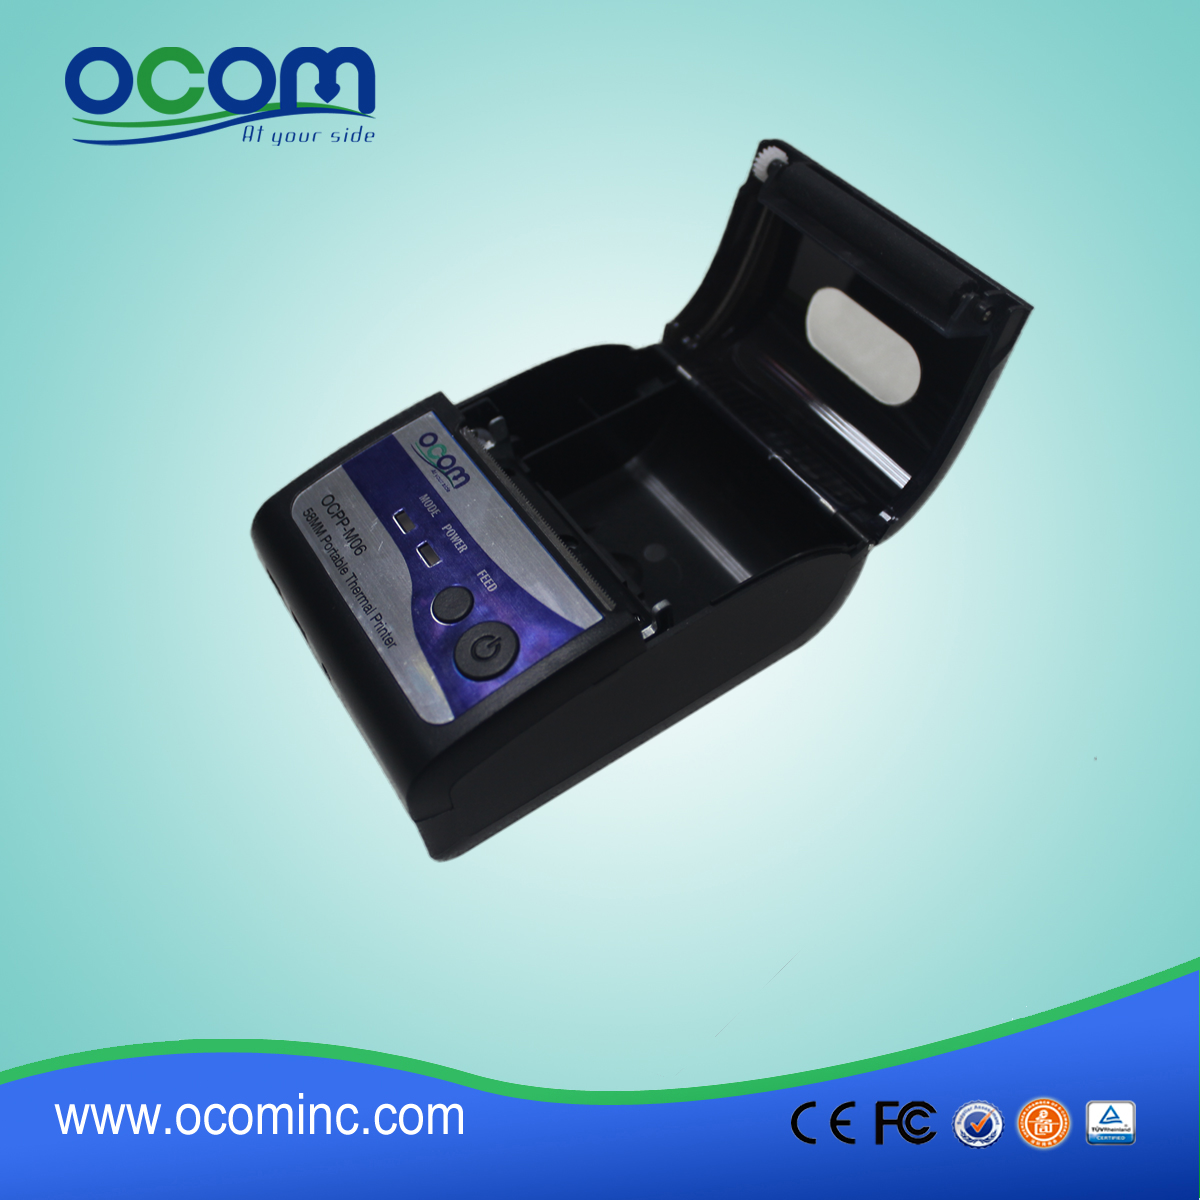 58 тепловая мини принтер для системы Такси (OCPP-М06)